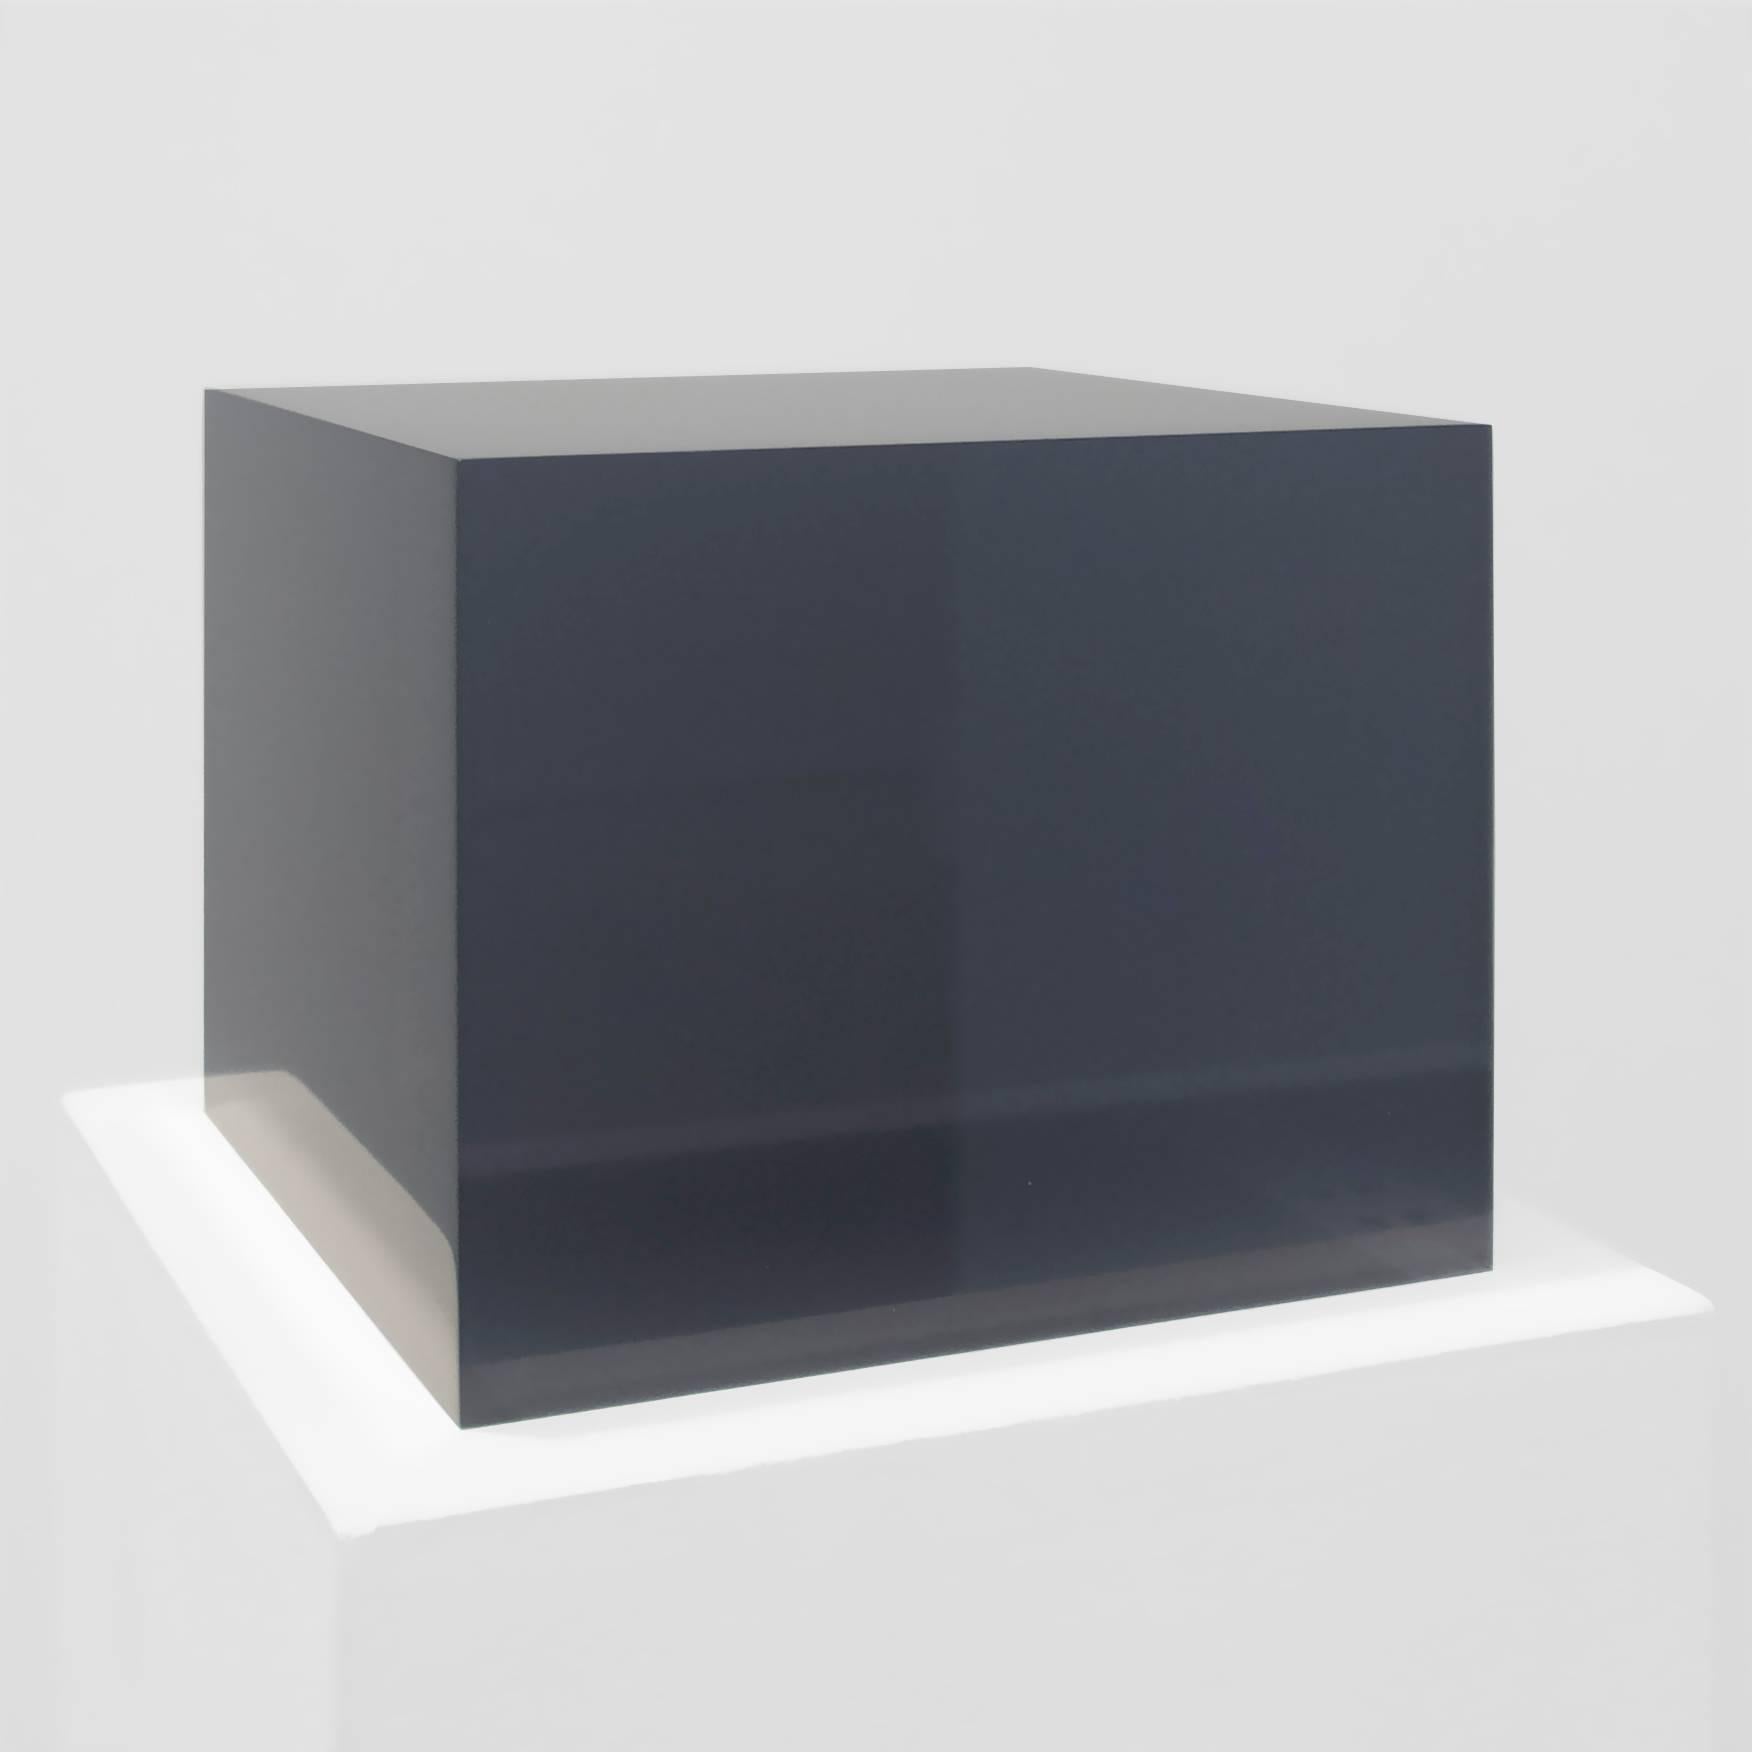 Peter Alexander Abstract Sculpture - 5/13/16 (Grey Box)